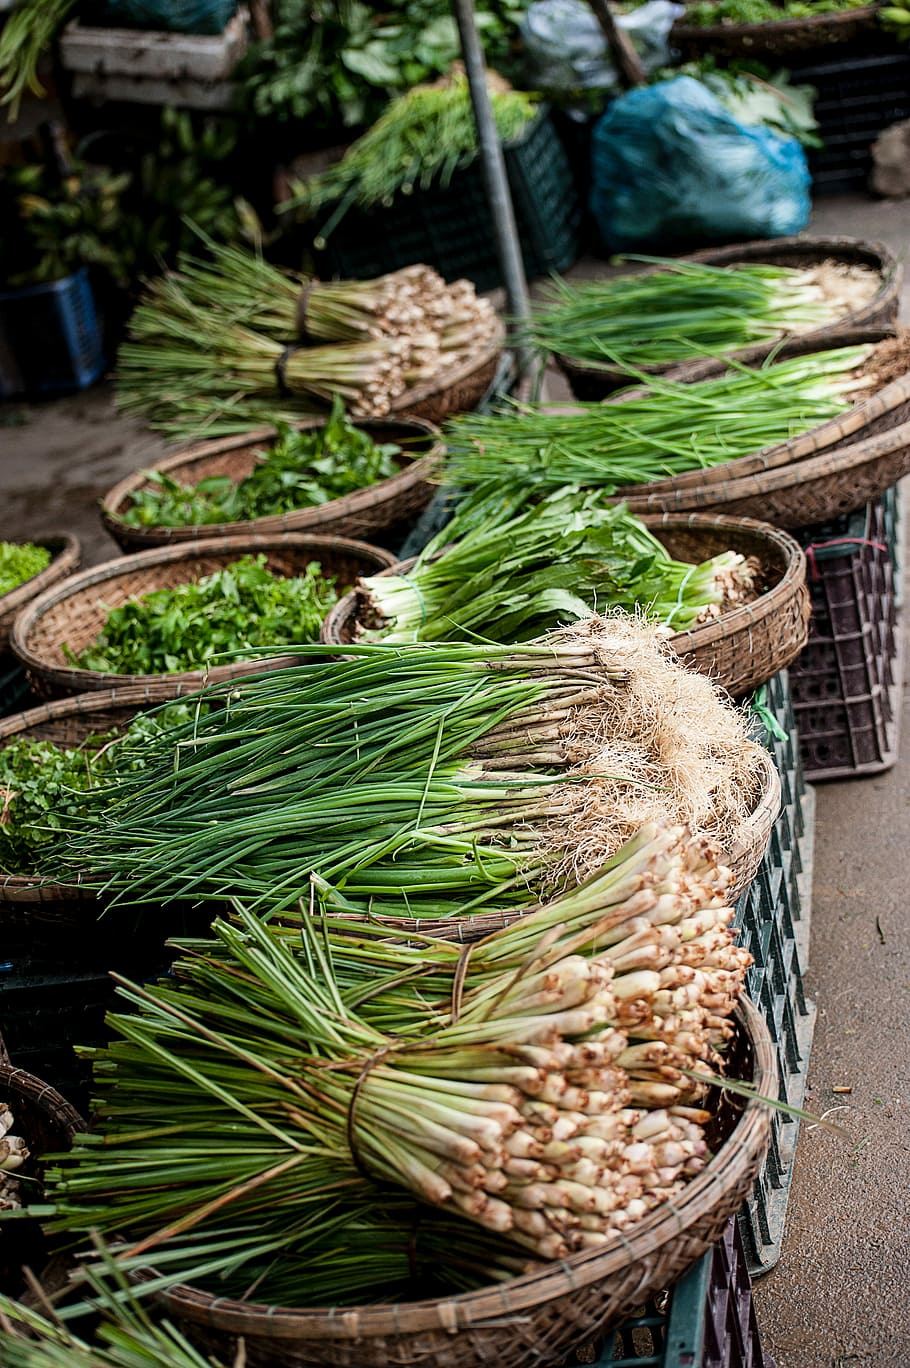 mercado de vegetais, vegetal, mercado, cesta, cestas, mercado de alimentos, verde, erva, ervas, cebola